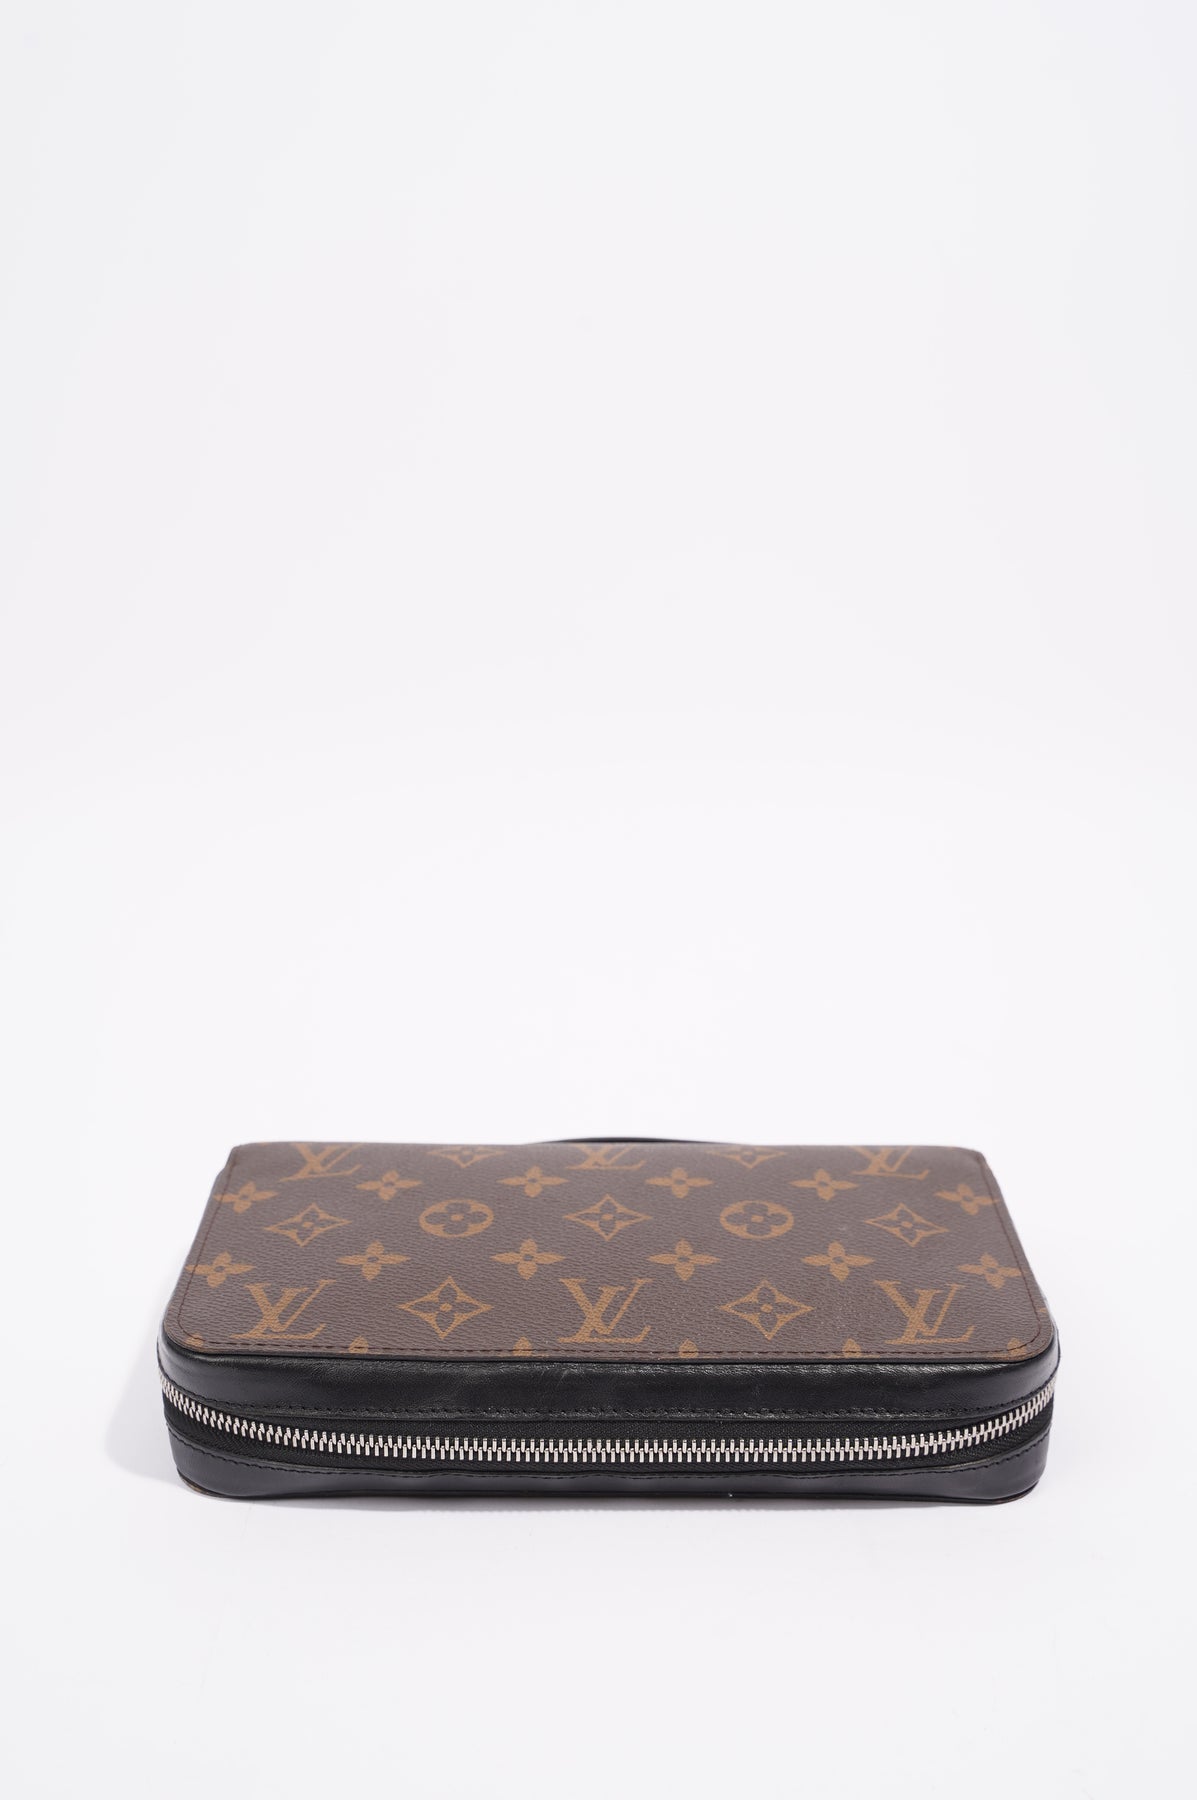 Louis Vuitton Zippy XL Wallet, Black, One Size